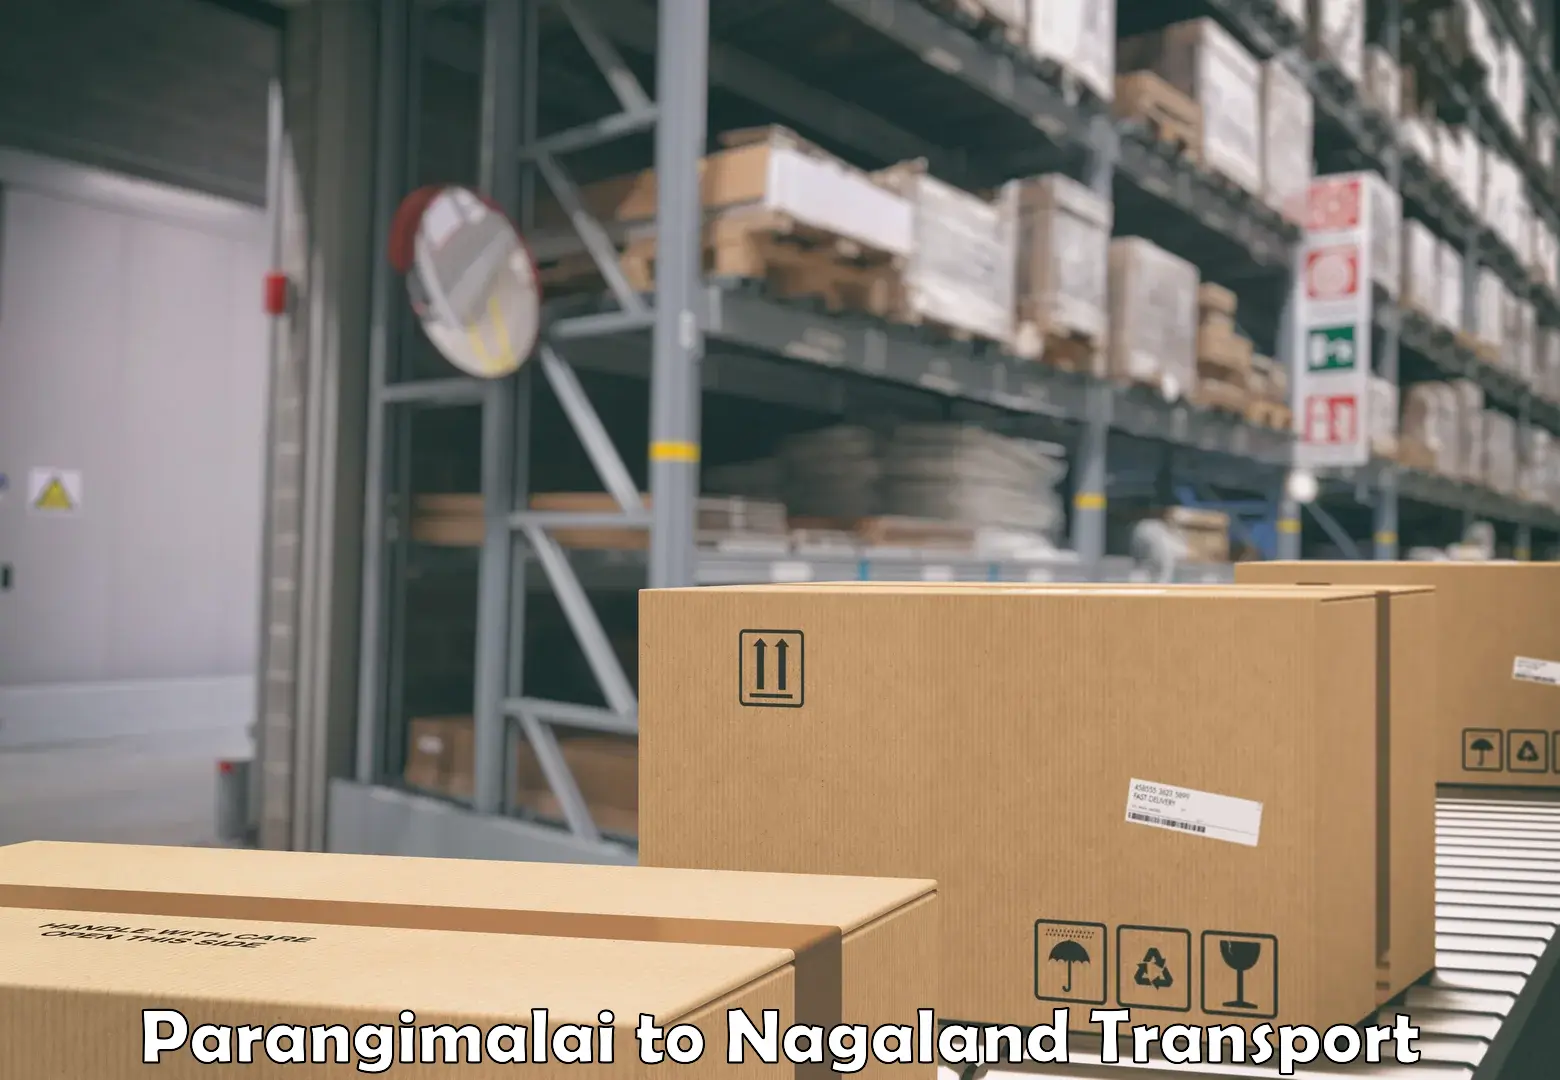 Nearest transport service Parangimalai to Nagaland